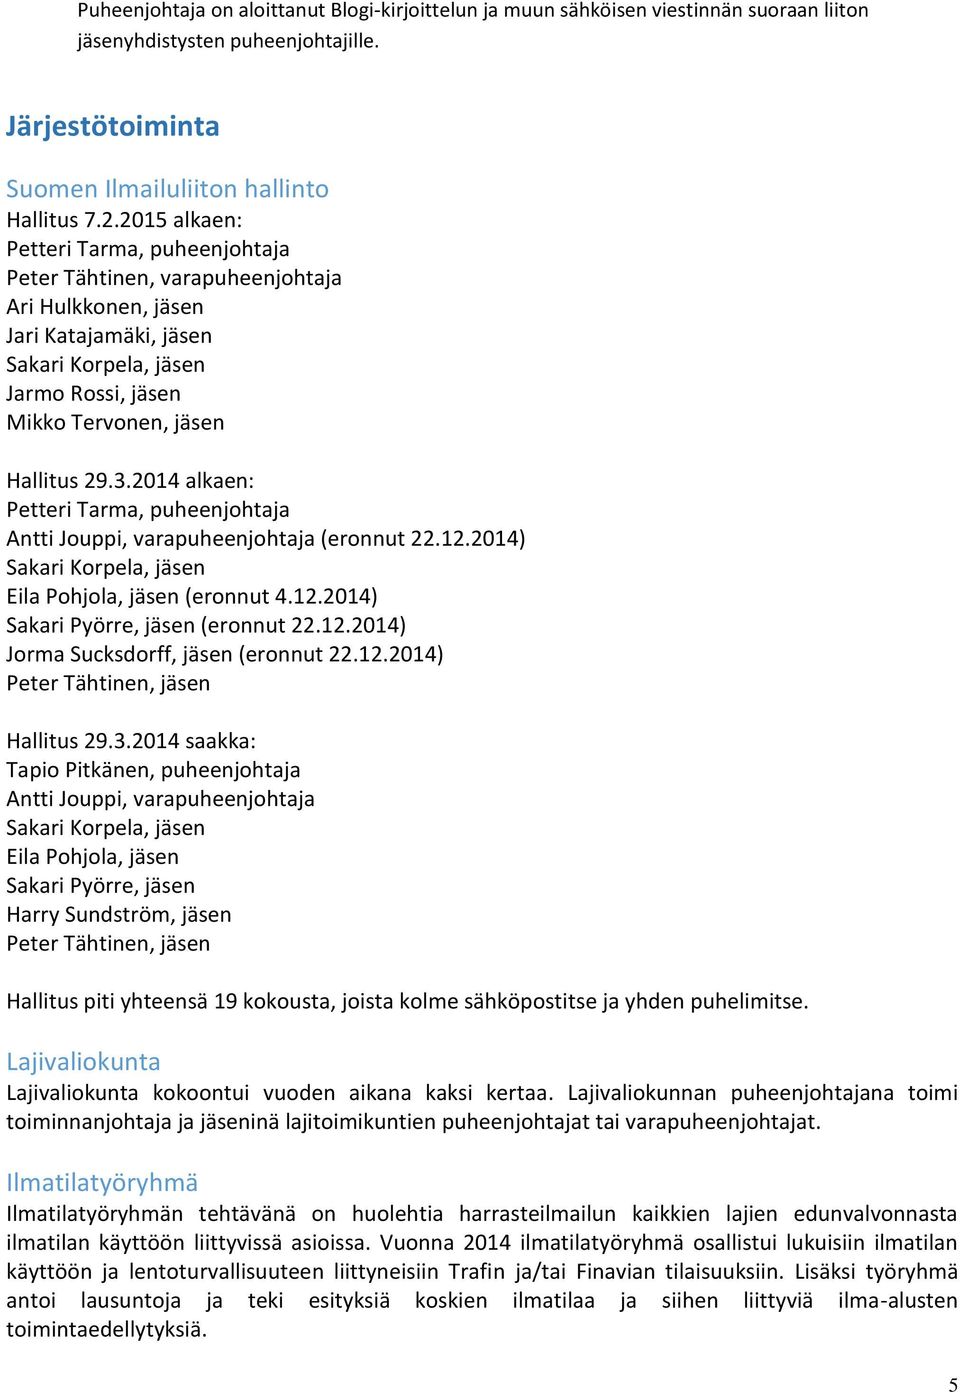 2014 alkaen: Petteri Tarma, puheenjohtaja Antti Jouppi, varapuheenjohtaja (eronnut 22.12.2014) Sakari Korpela, jäsen Eila Pohjola, jäsen (eronnut 4.12.2014) Sakari Pyörre, jäsen (eronnut 22.12.2014) Jorma Sucksdorff, jäsen (eronnut 22.